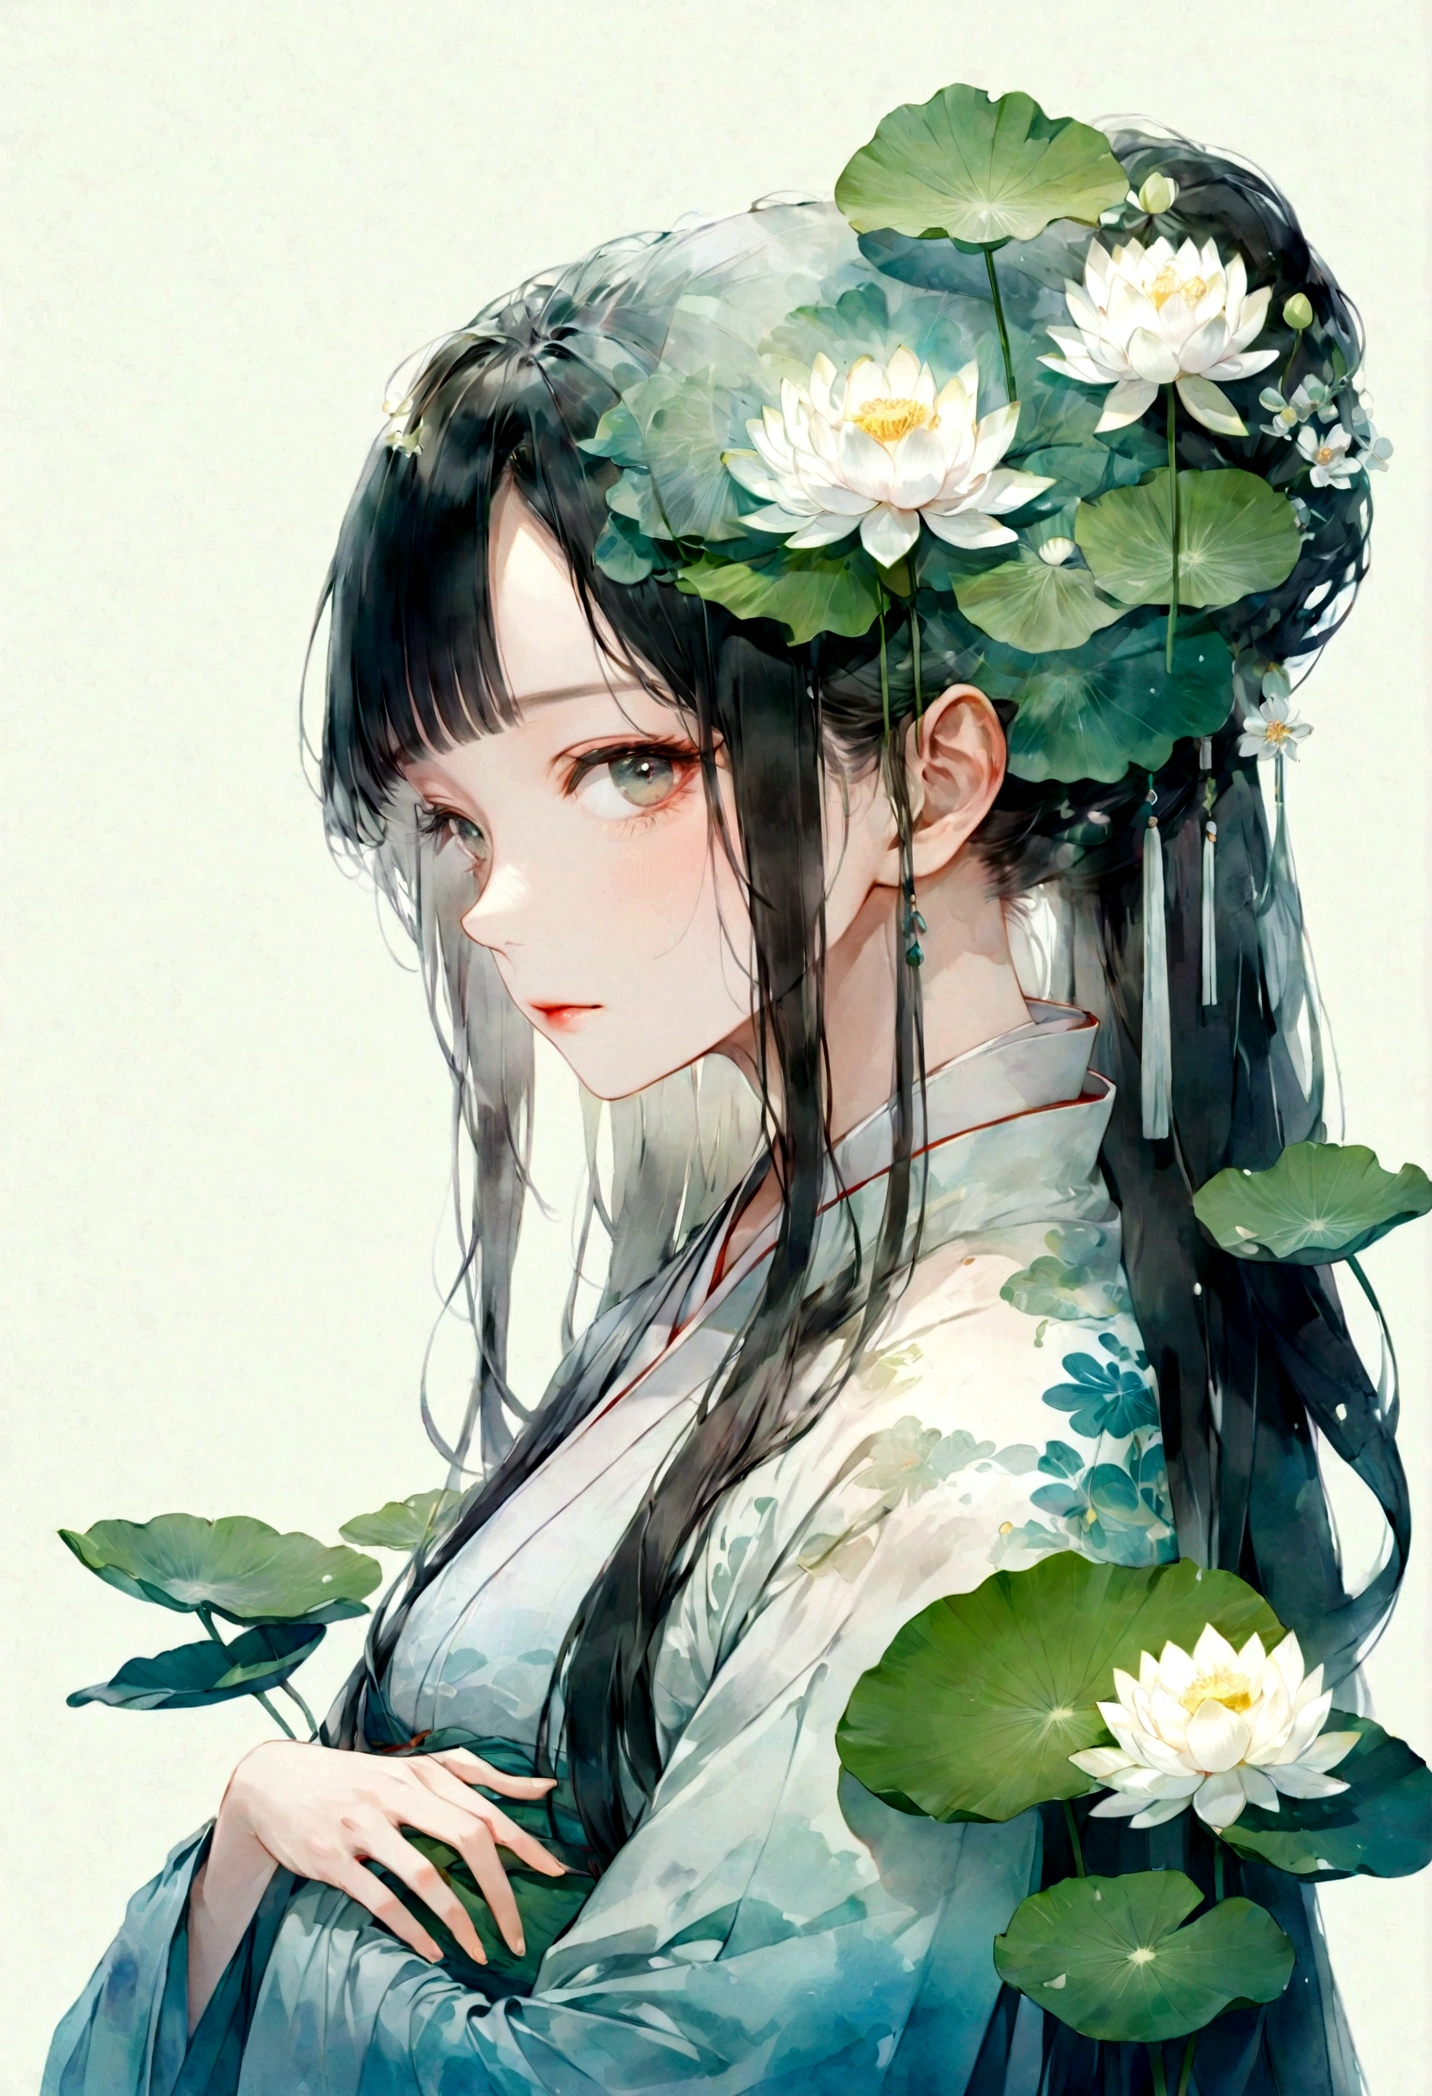    中国の漢服を着た長い髪の美しく詳細な女の子の二重露光フラットベクター(顔はきれい, 美しくて完璧)画像 ( 完璧な解剖学的構造 ) ，背景は半透明で、大きな白い蓮の花と大きな蓮の葉がぴったりです, 美しく, 複雑なイラスト,   夢のような幻想的なアートワーク、コンセプチュアルなアートワークの傑作, 最高品質, 非常に詳細な, 高品質で細心の注意を払った水彩画スタイルのフラットベクター 

                          